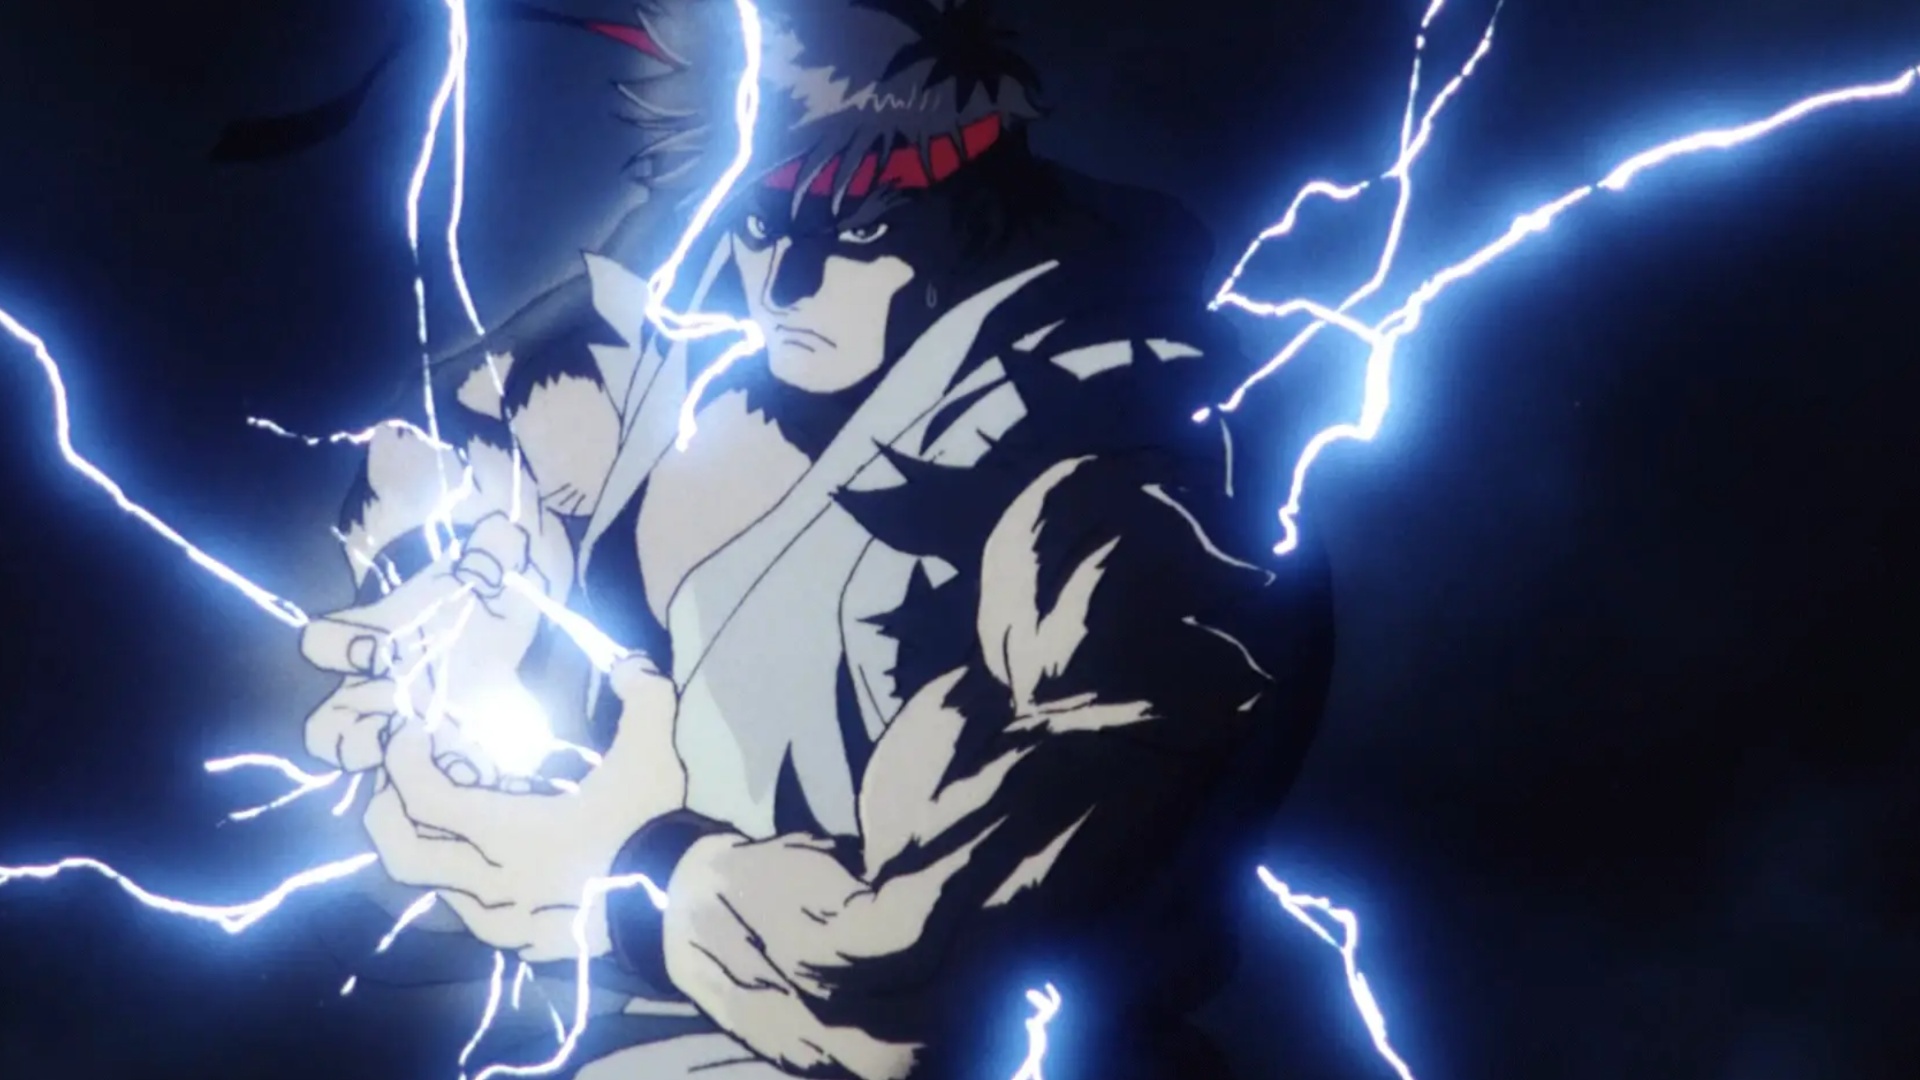 Ryu cargando un Hadouken en Street Fighter II: The Animated Movie.